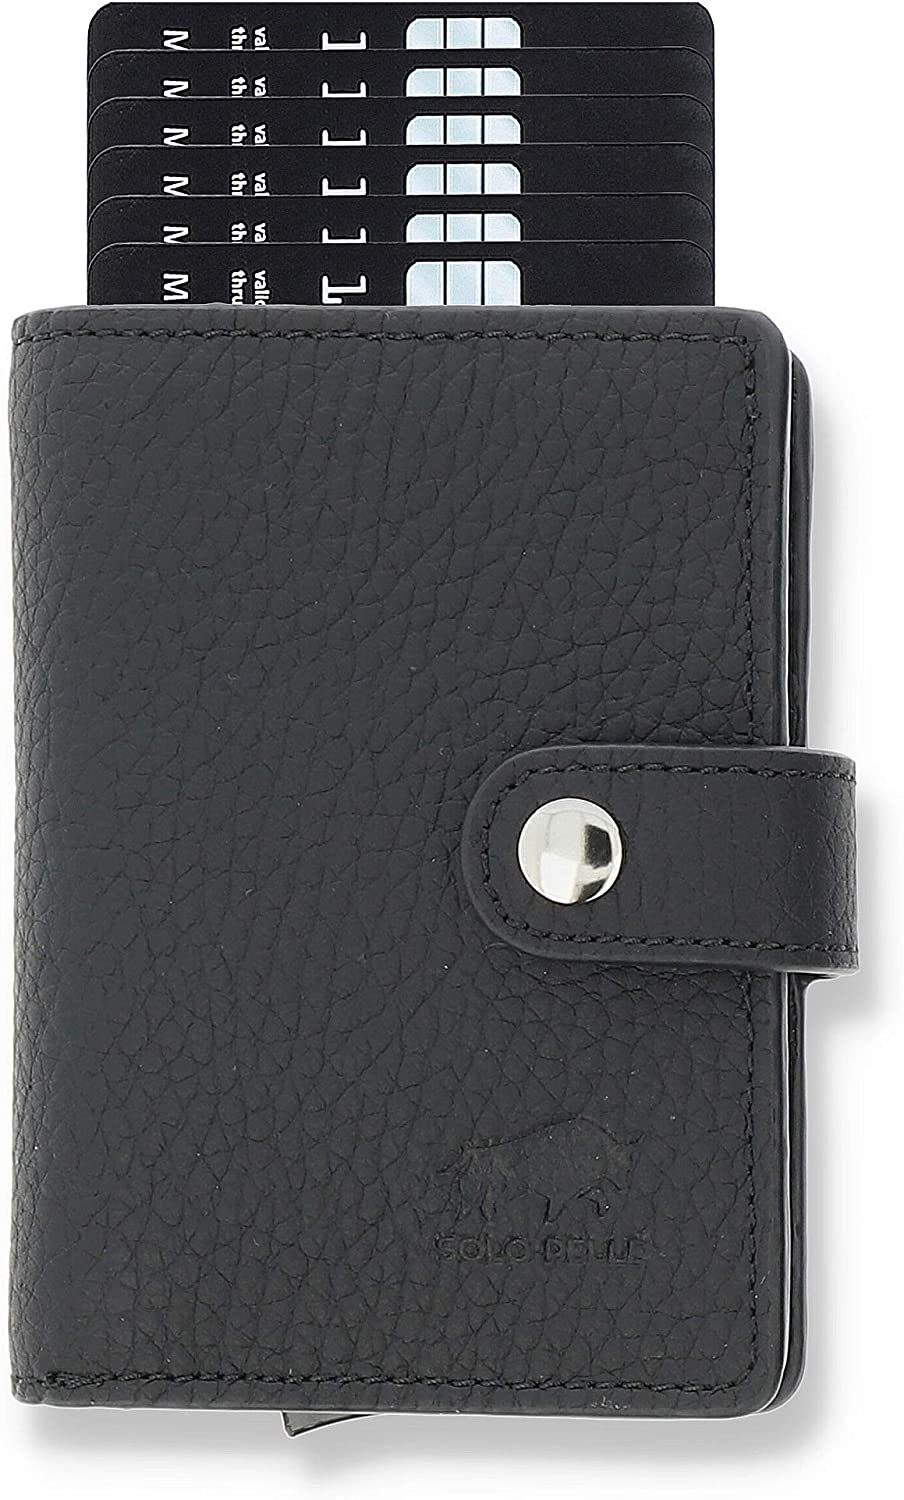 Solo Pelle Mini Geldbörse Q-Wallet Leder Geldbörse mit integriertem Kartenetui für 15 Karten, Echt Leder, Made in Europe, in elegantem Design mit RFID Schutz Matt Schwarz